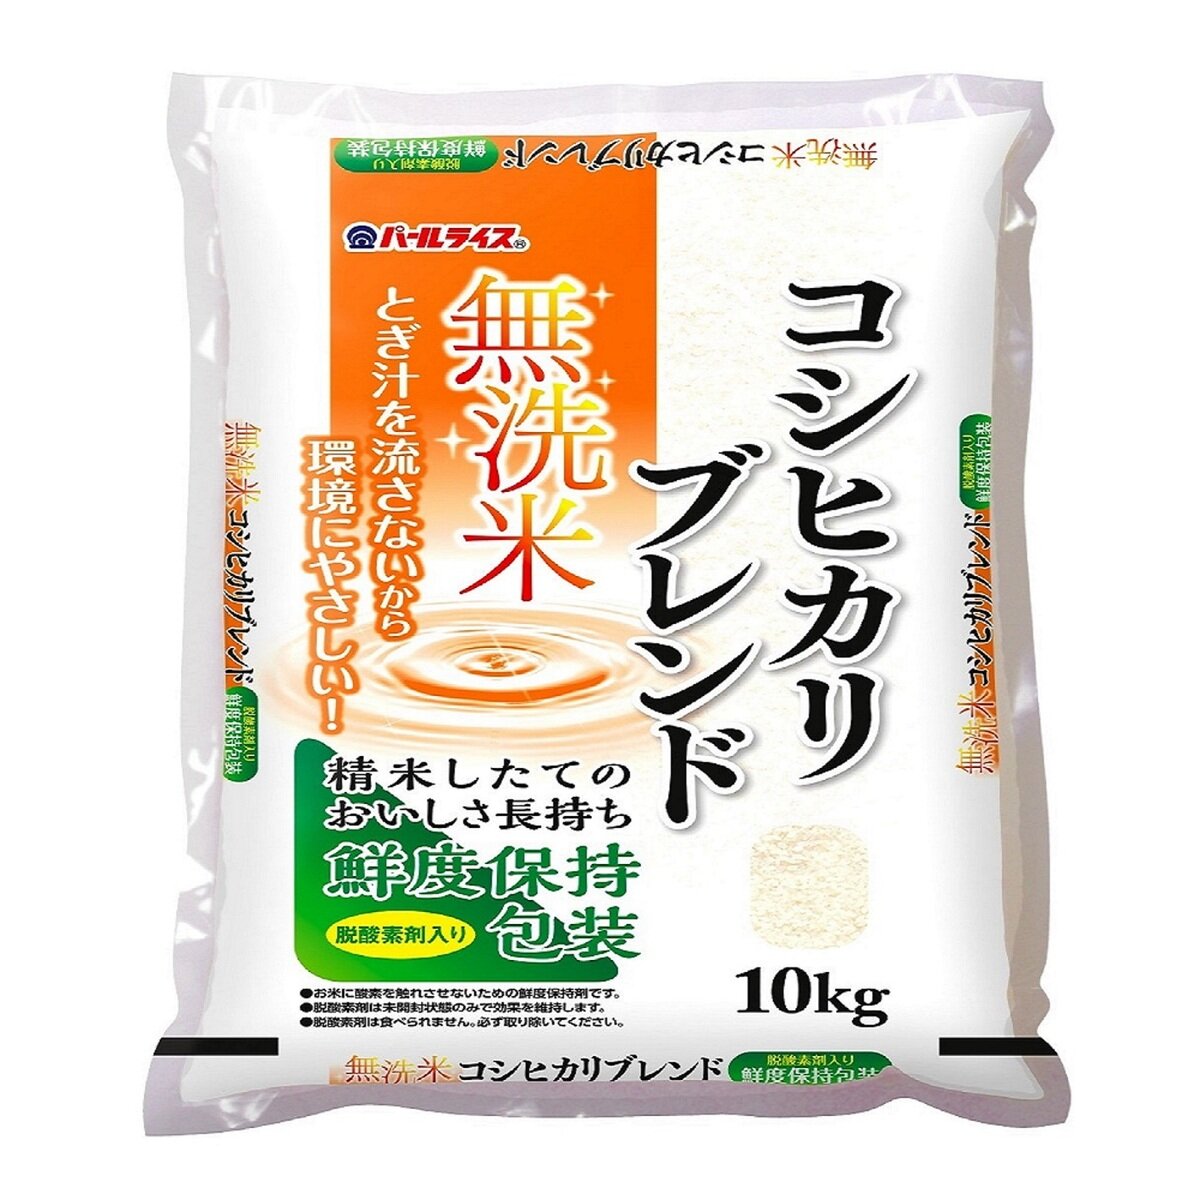 生活応援米24kg お米 白米 コスパ米 限定出品 福岡県米使用 - 米・雑穀